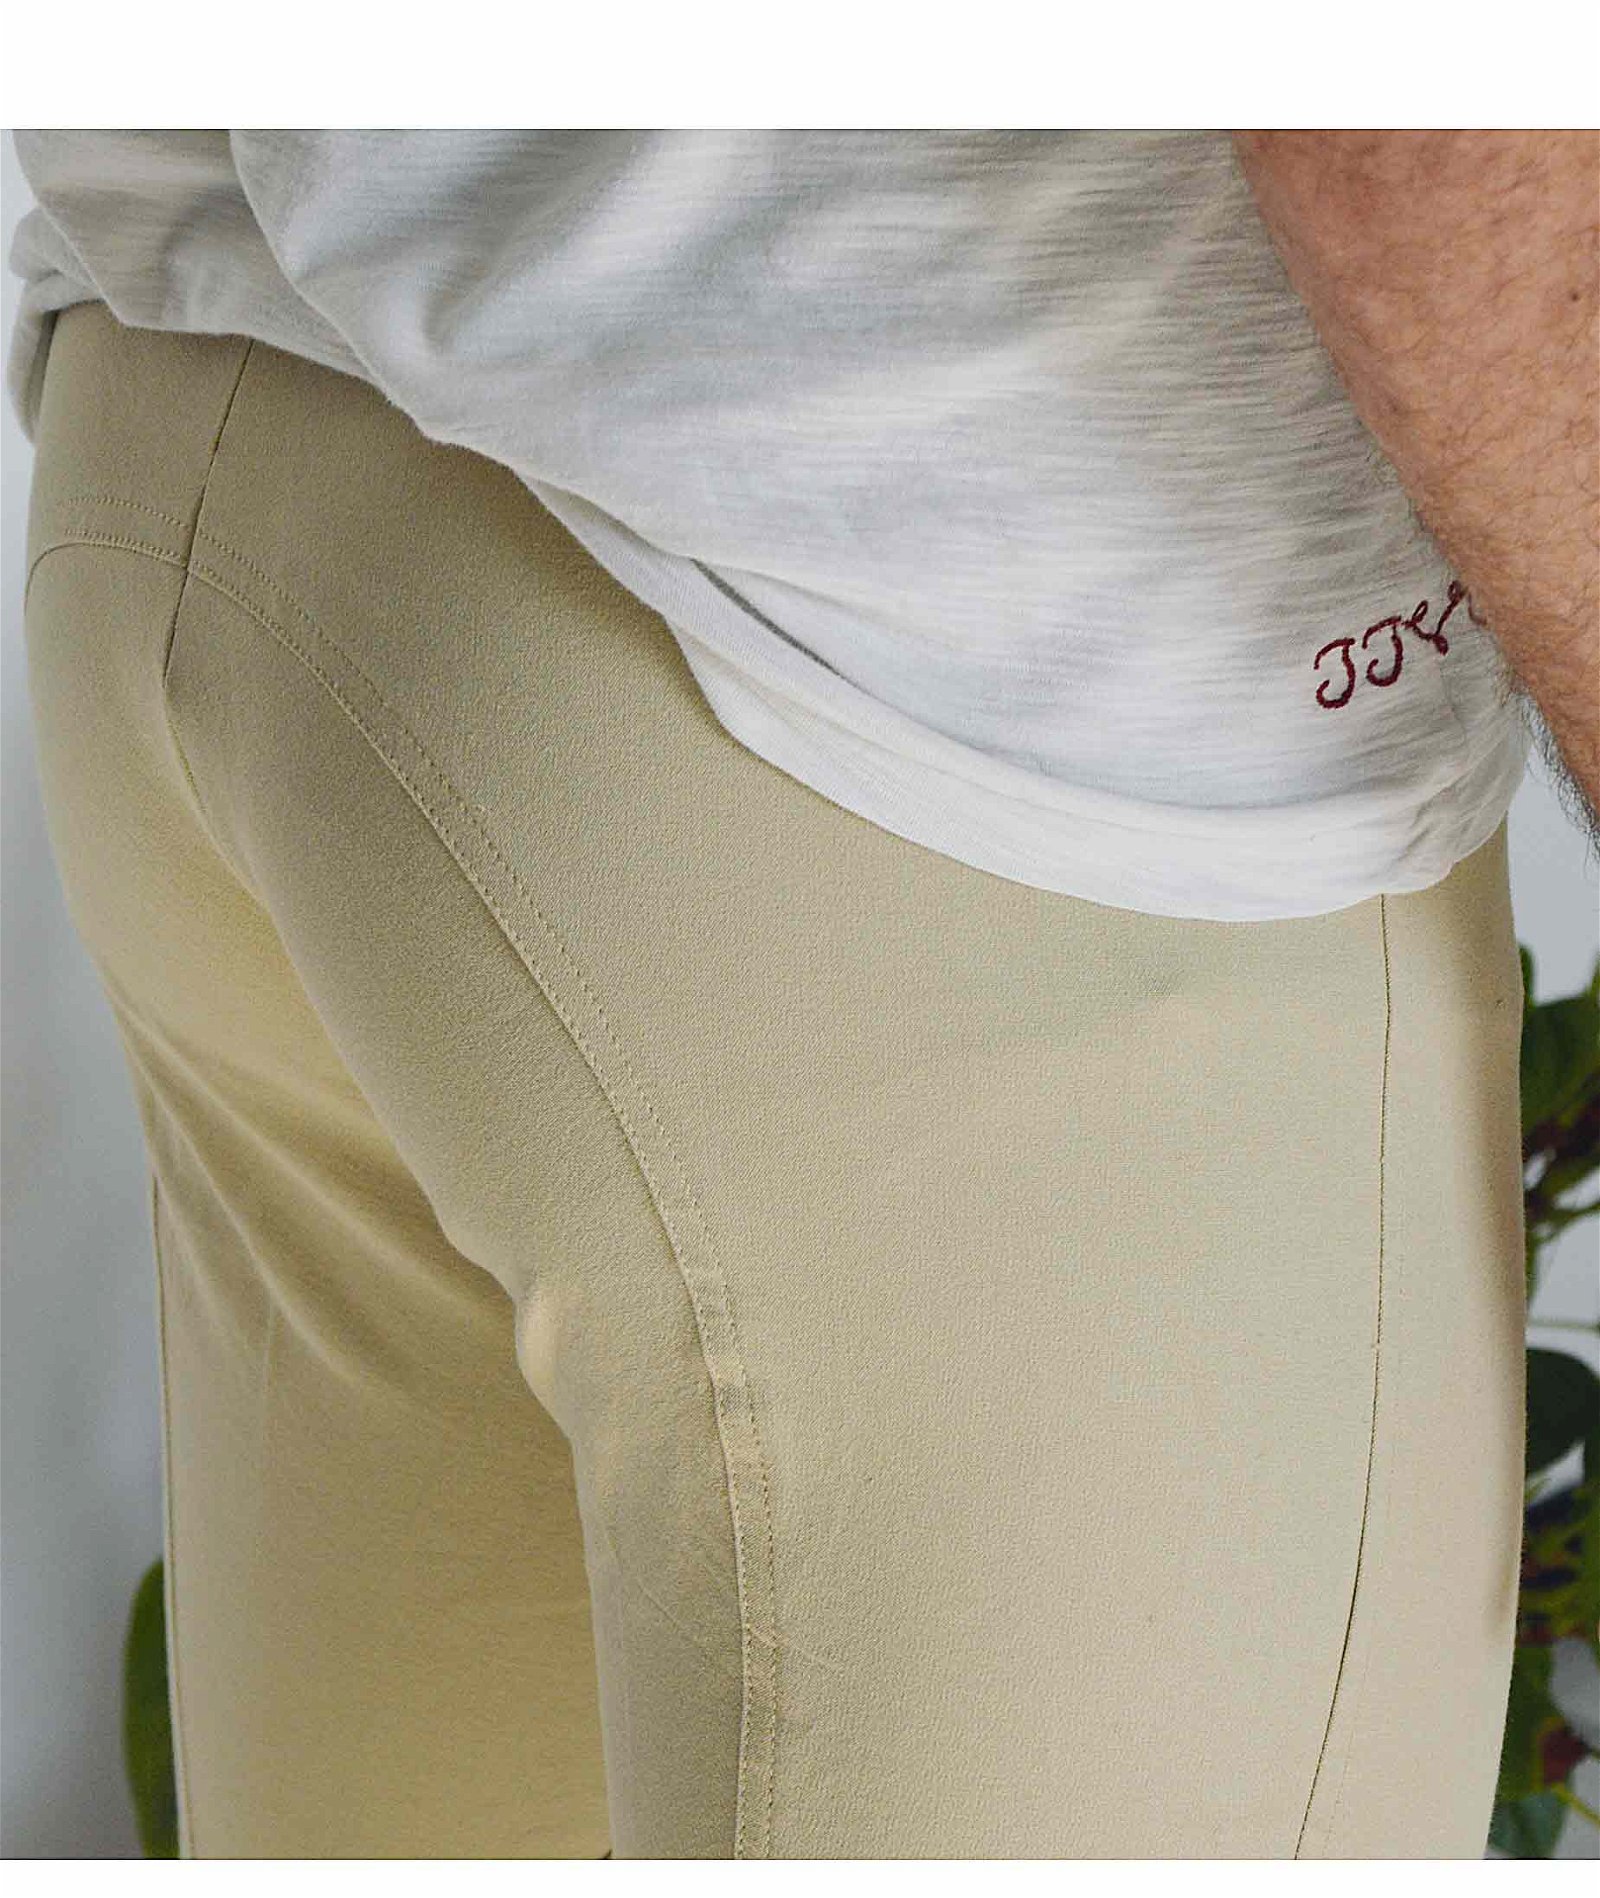 PROMOZIONE Pantalone equitazione ragazzo Equi Comfort Plus anatomico invernale doppia regolazione alla vita e 2 tasche - foto 5